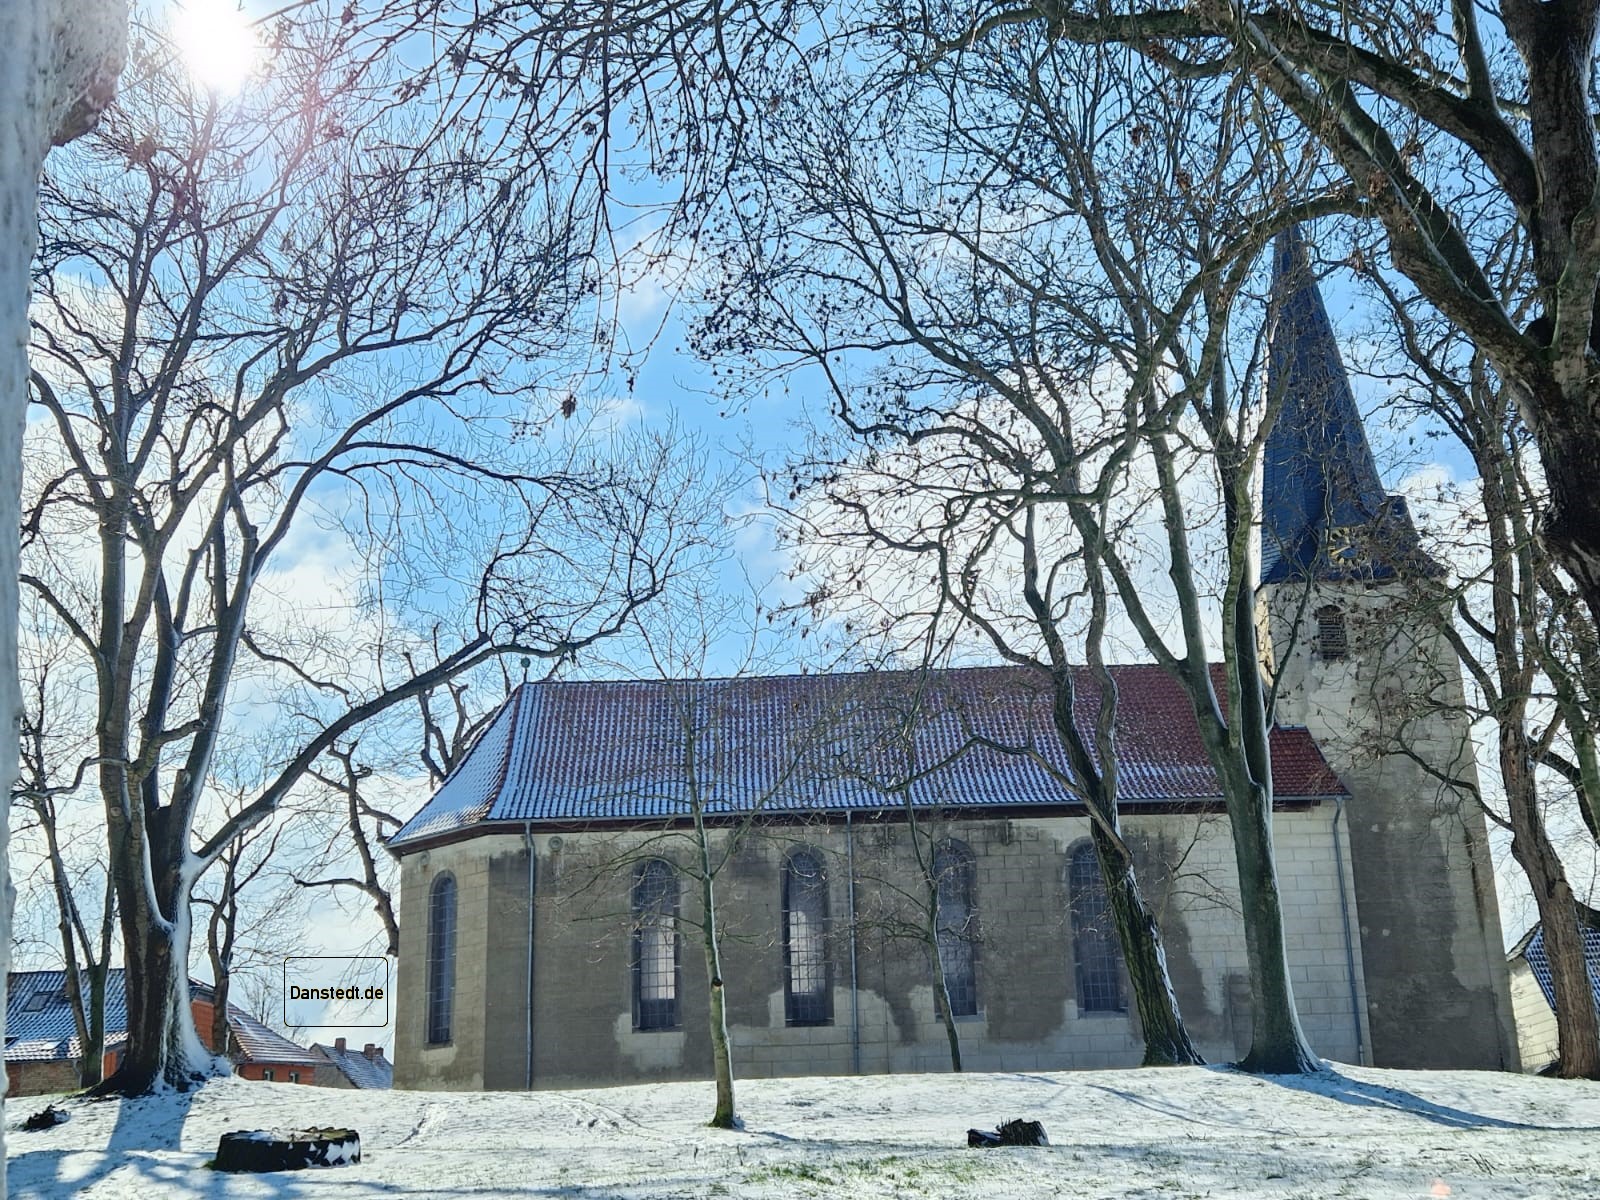 Kirche St. Udalrici Danstedt 2023 im letzten Schnee bei Frühlingssonne